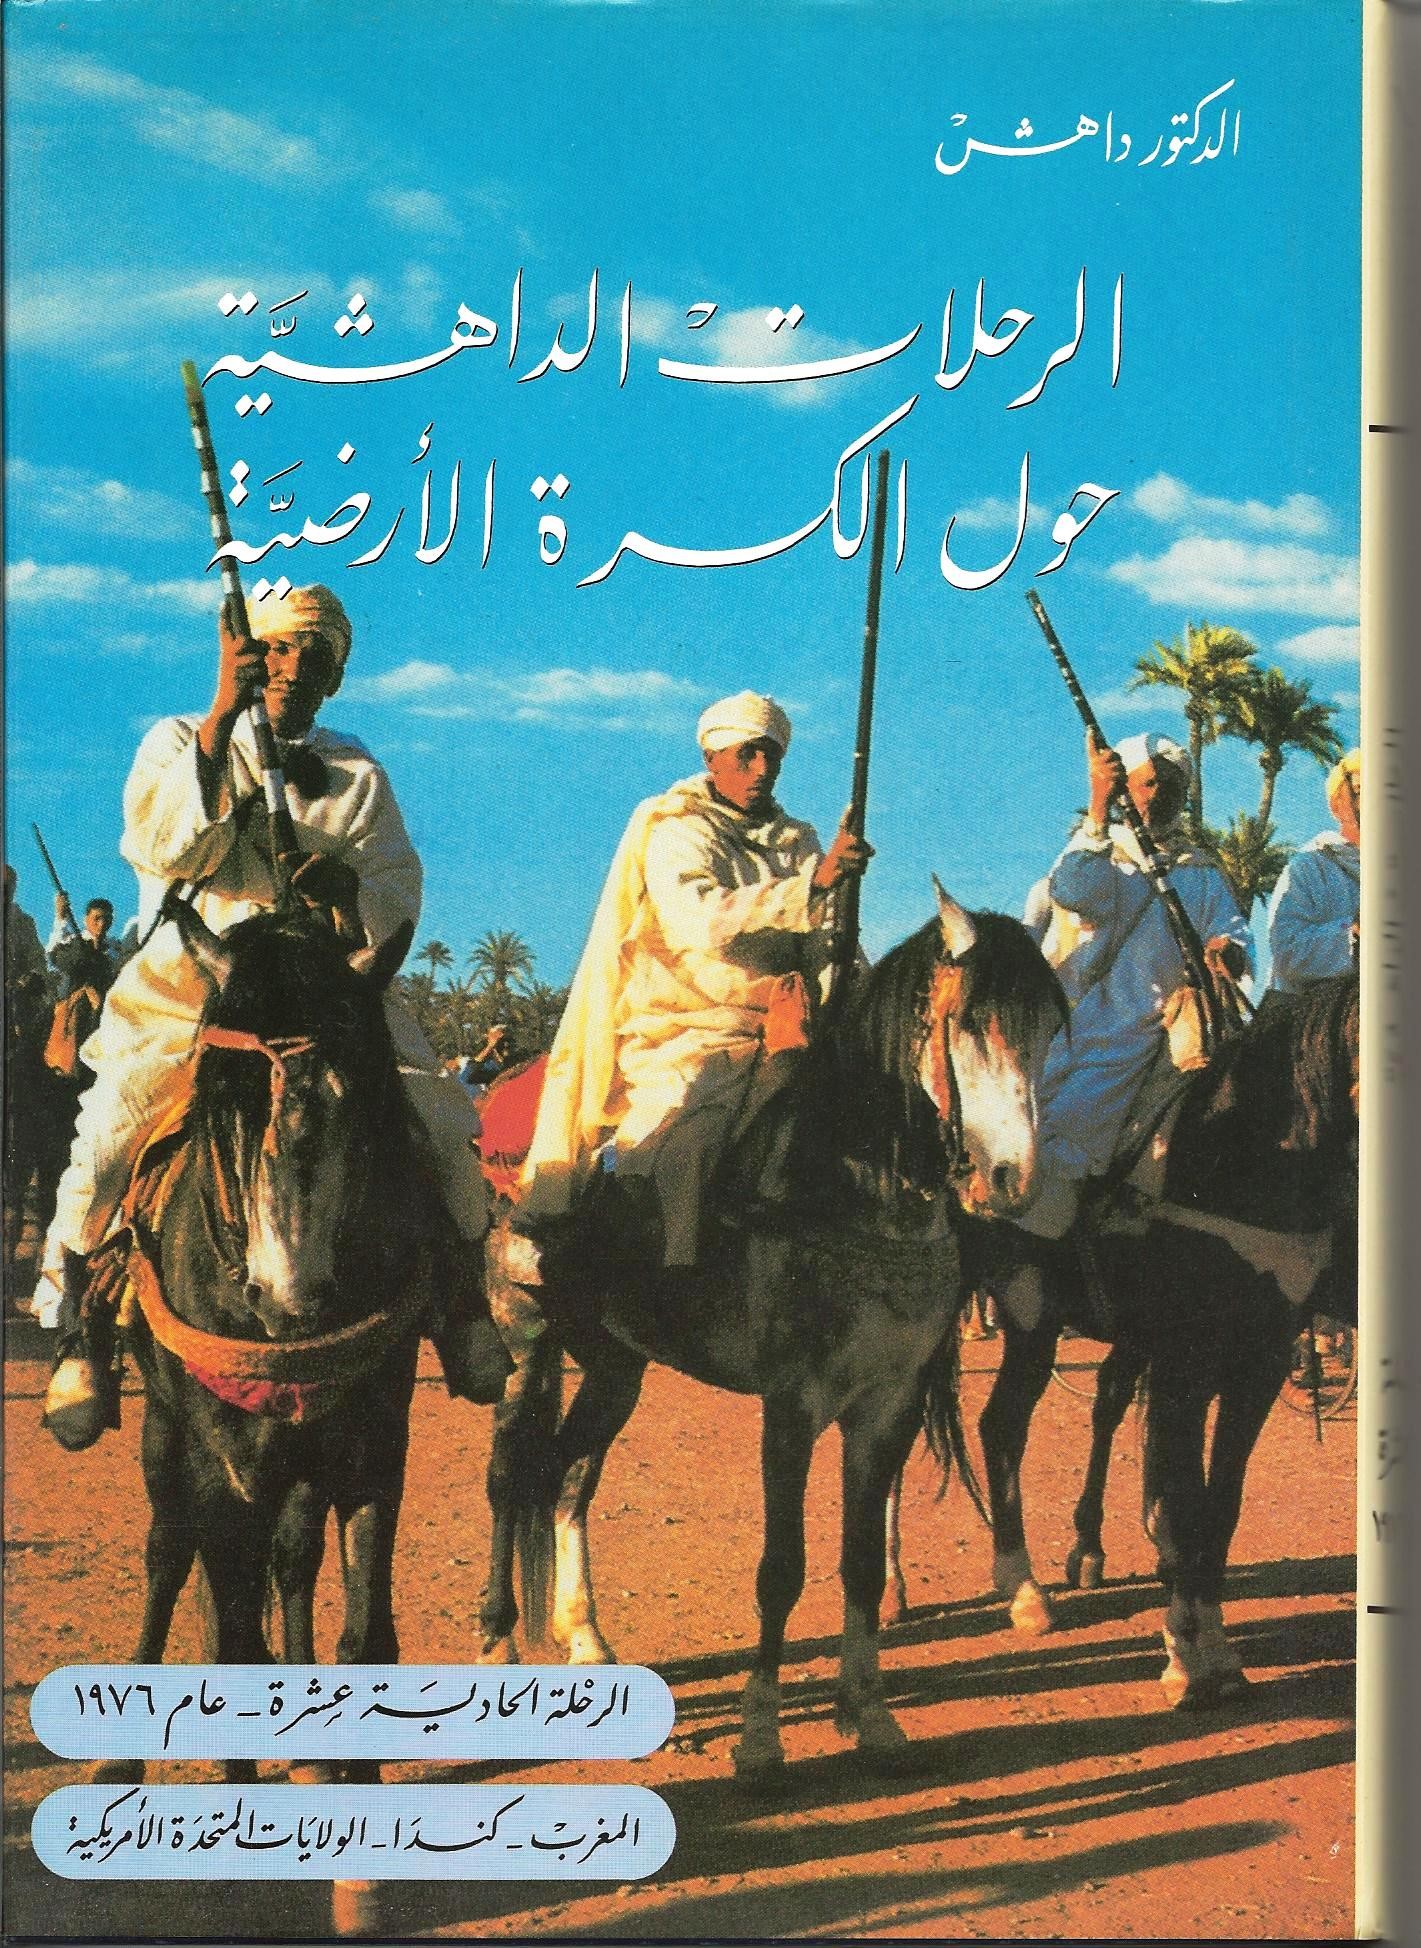 الرِّحلاتُ الداهشيَّة حول الكُرة الأرضيَّة 	الرحلة الحادية عشرة عام 1976: المغرب- كندا- الولاياتُ المتحدة الأمريكيَّة 